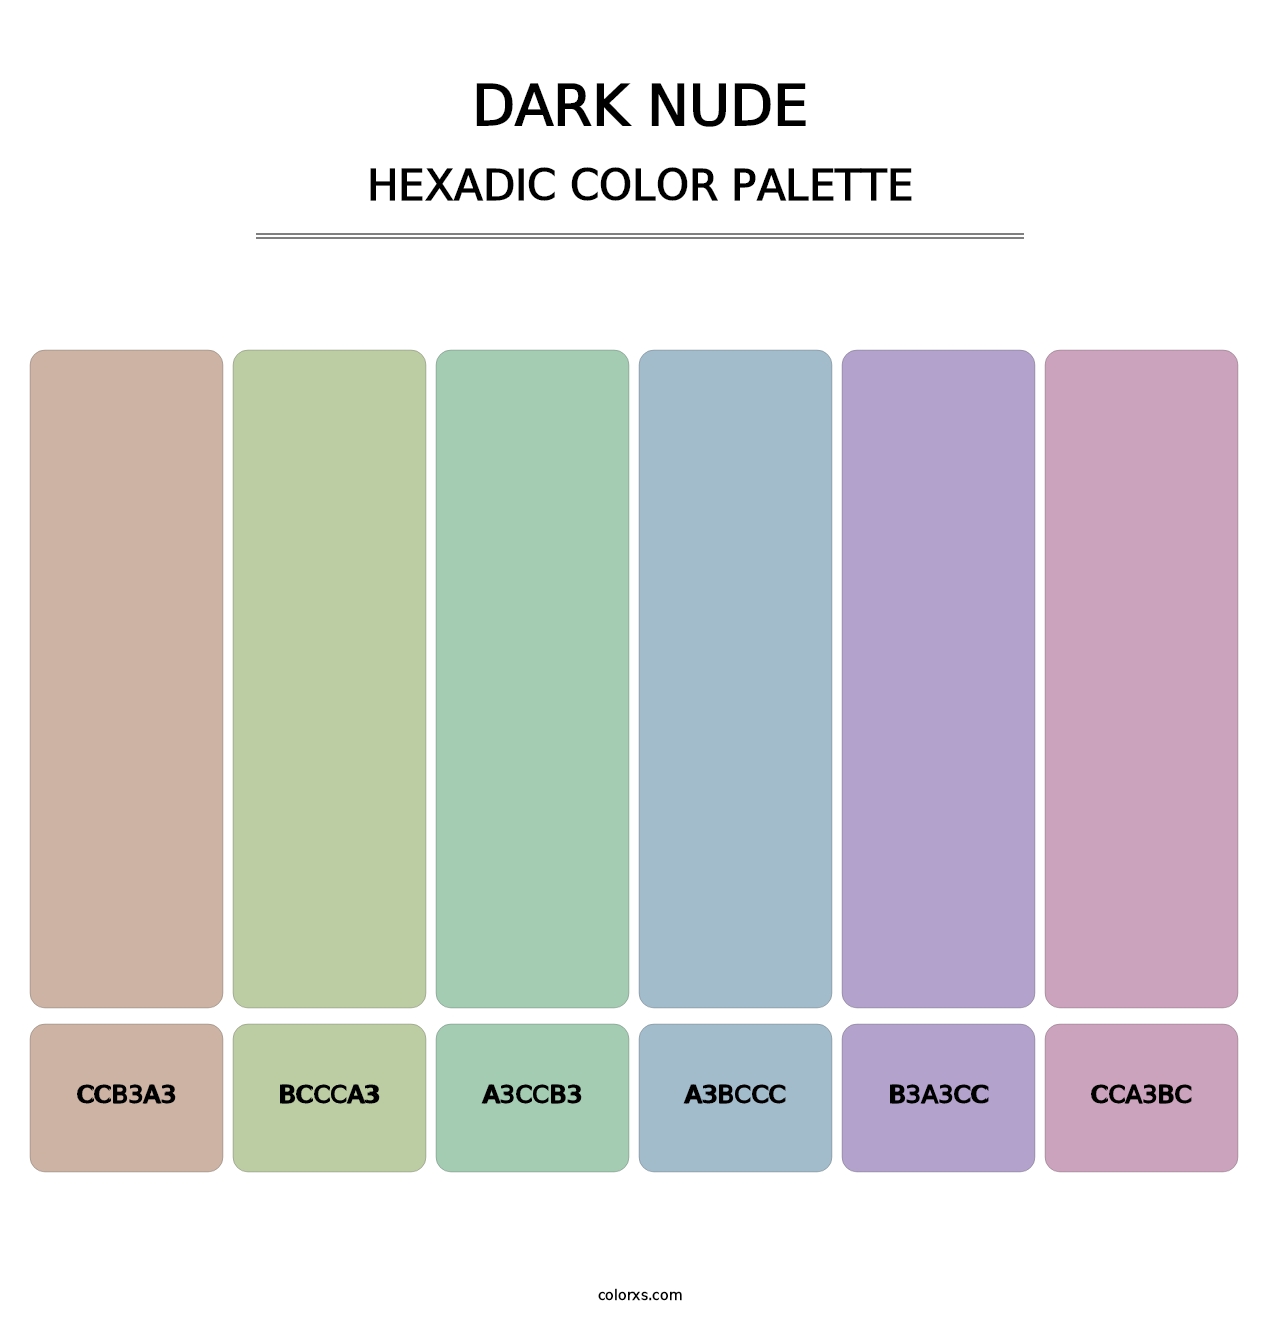 Dark Nude - Hexadic Color Palette